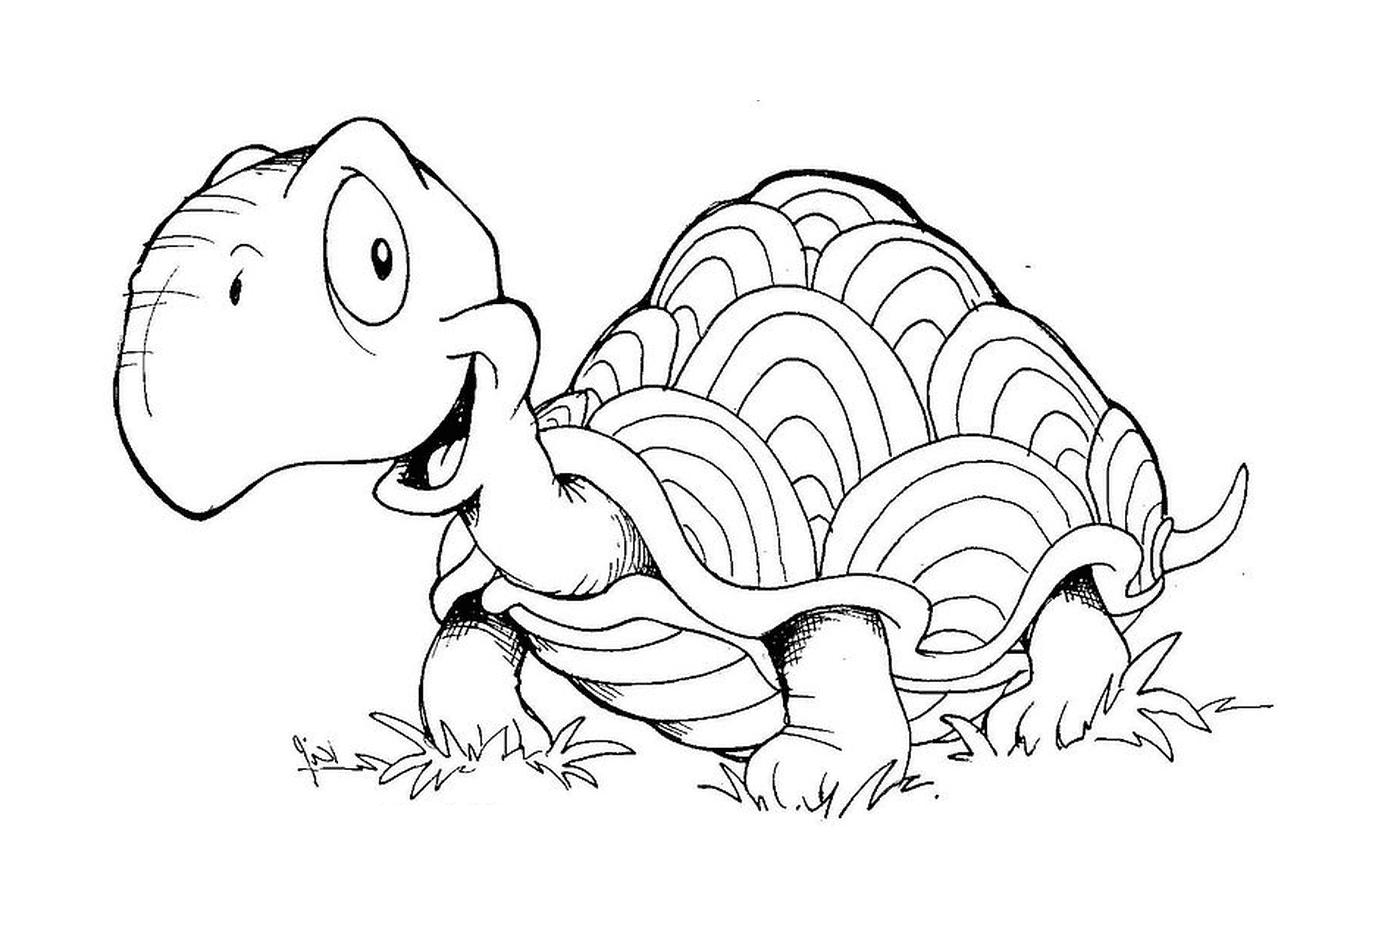  Черепаха в траве 